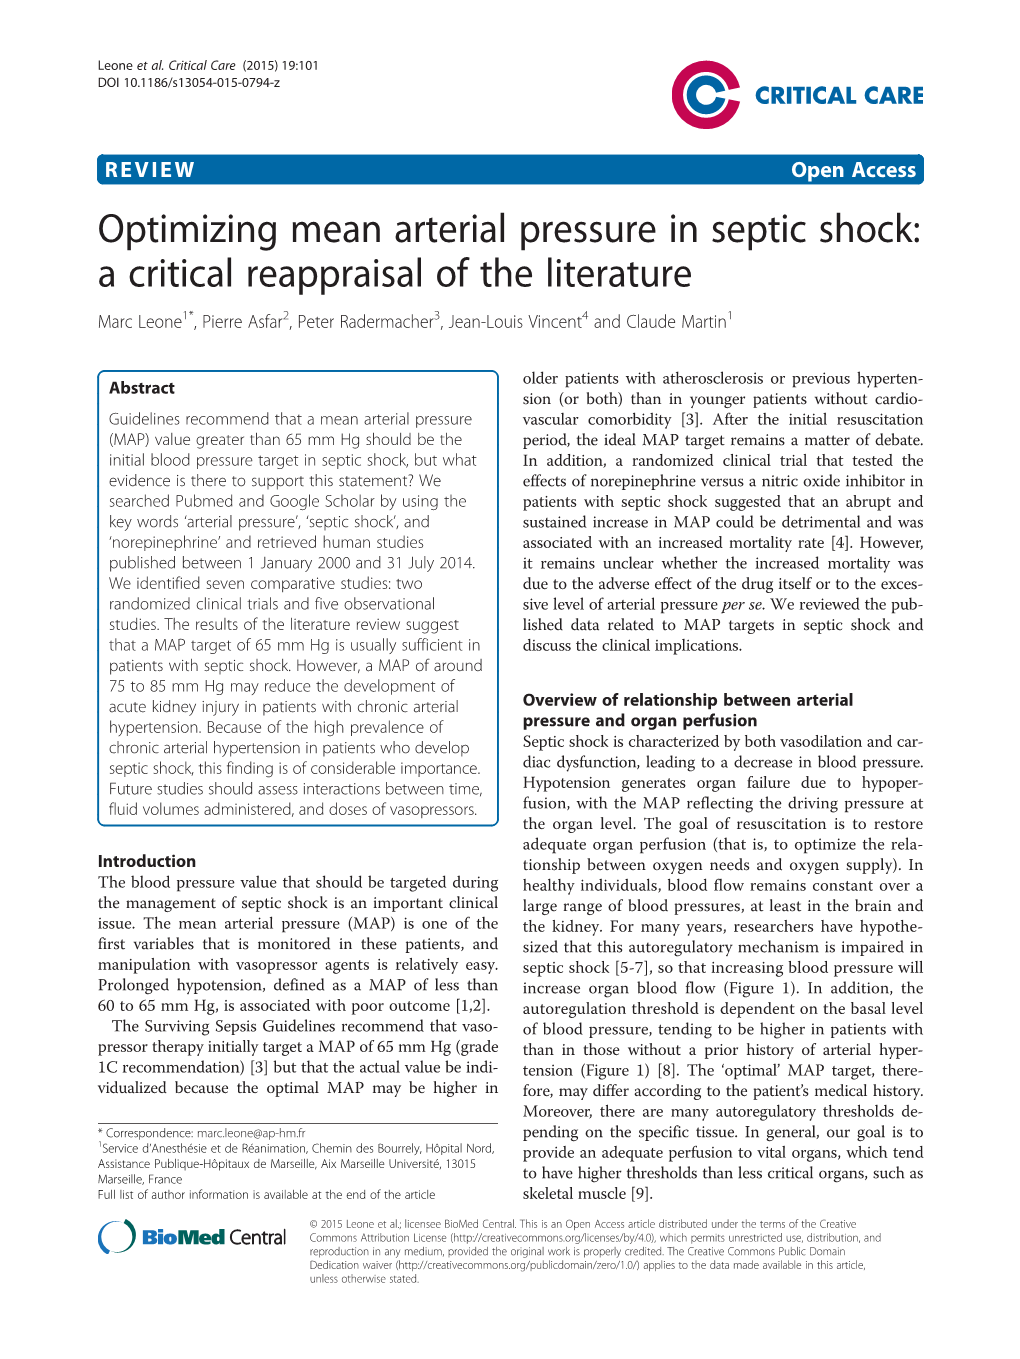 Optimizing Mean Arterial Pressure in Septic Shock